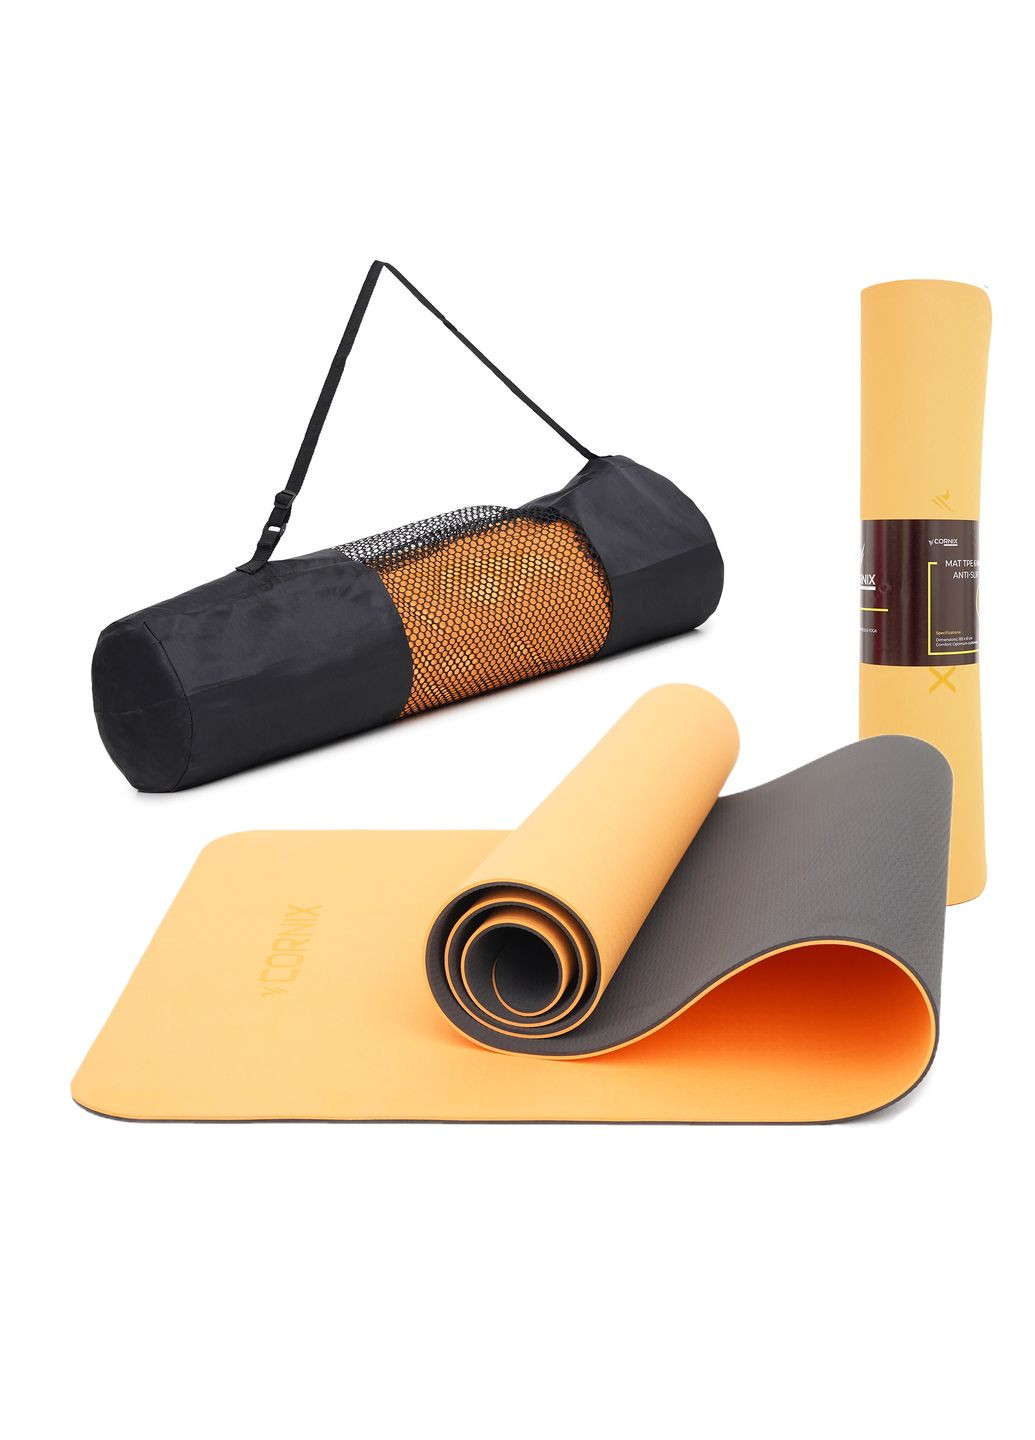 Коврик спортивный TPE 183 x 61 x 0.6 cм для йоги и фитнеса XR0001 Orange/Black Cornix xr-0001 (275654235)